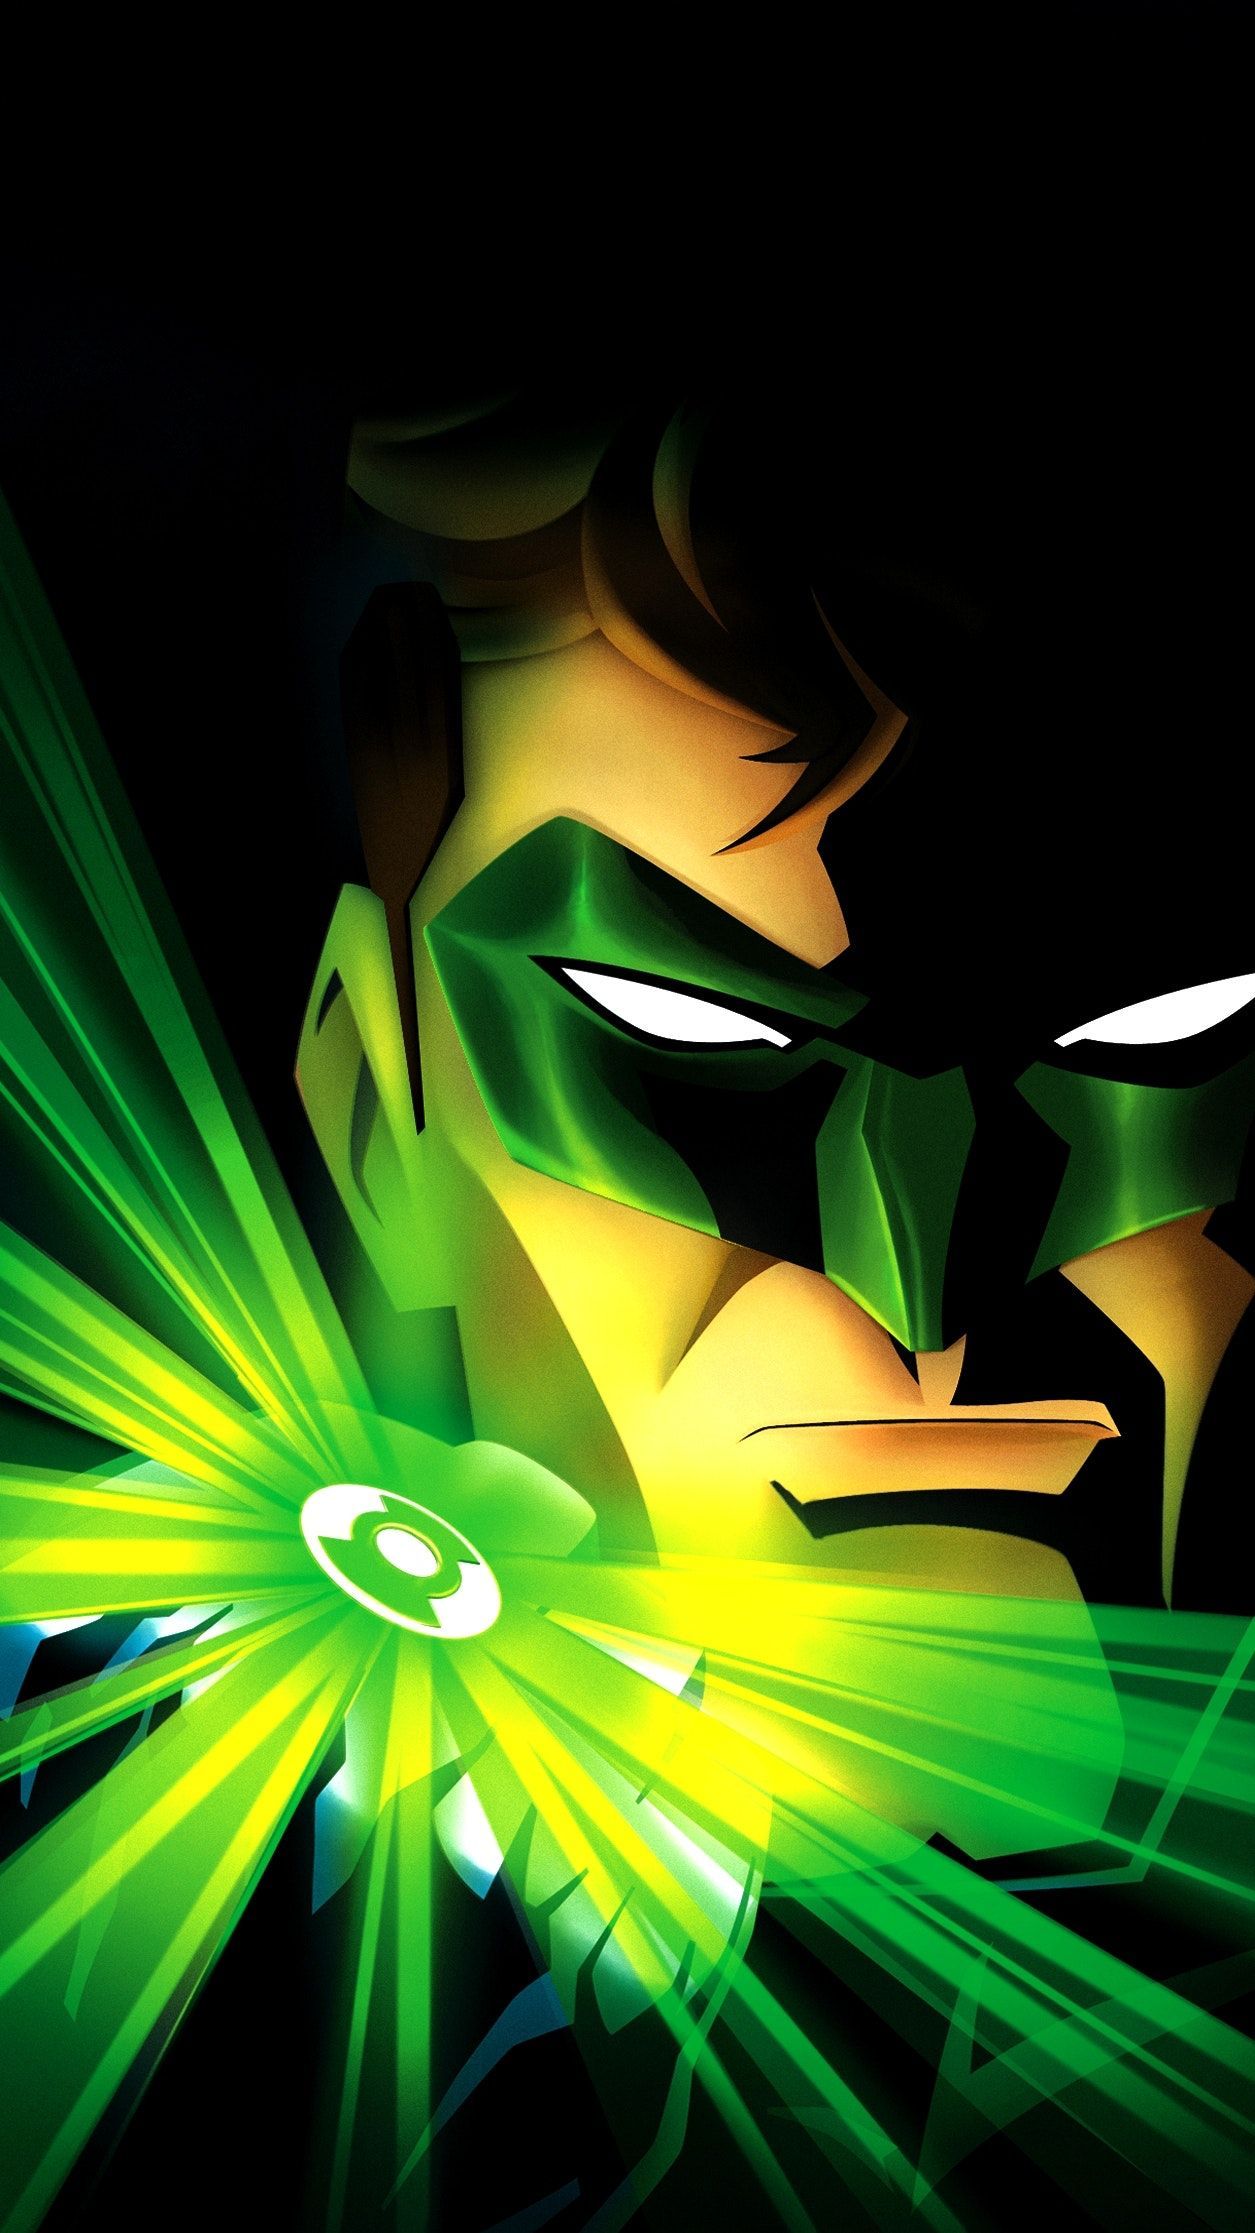 Green Lantern: First Flight (2009) Phone Wallpaper. Moviemania. Green lantern wallpaper, Green lantern, Marvel comics wallpaper